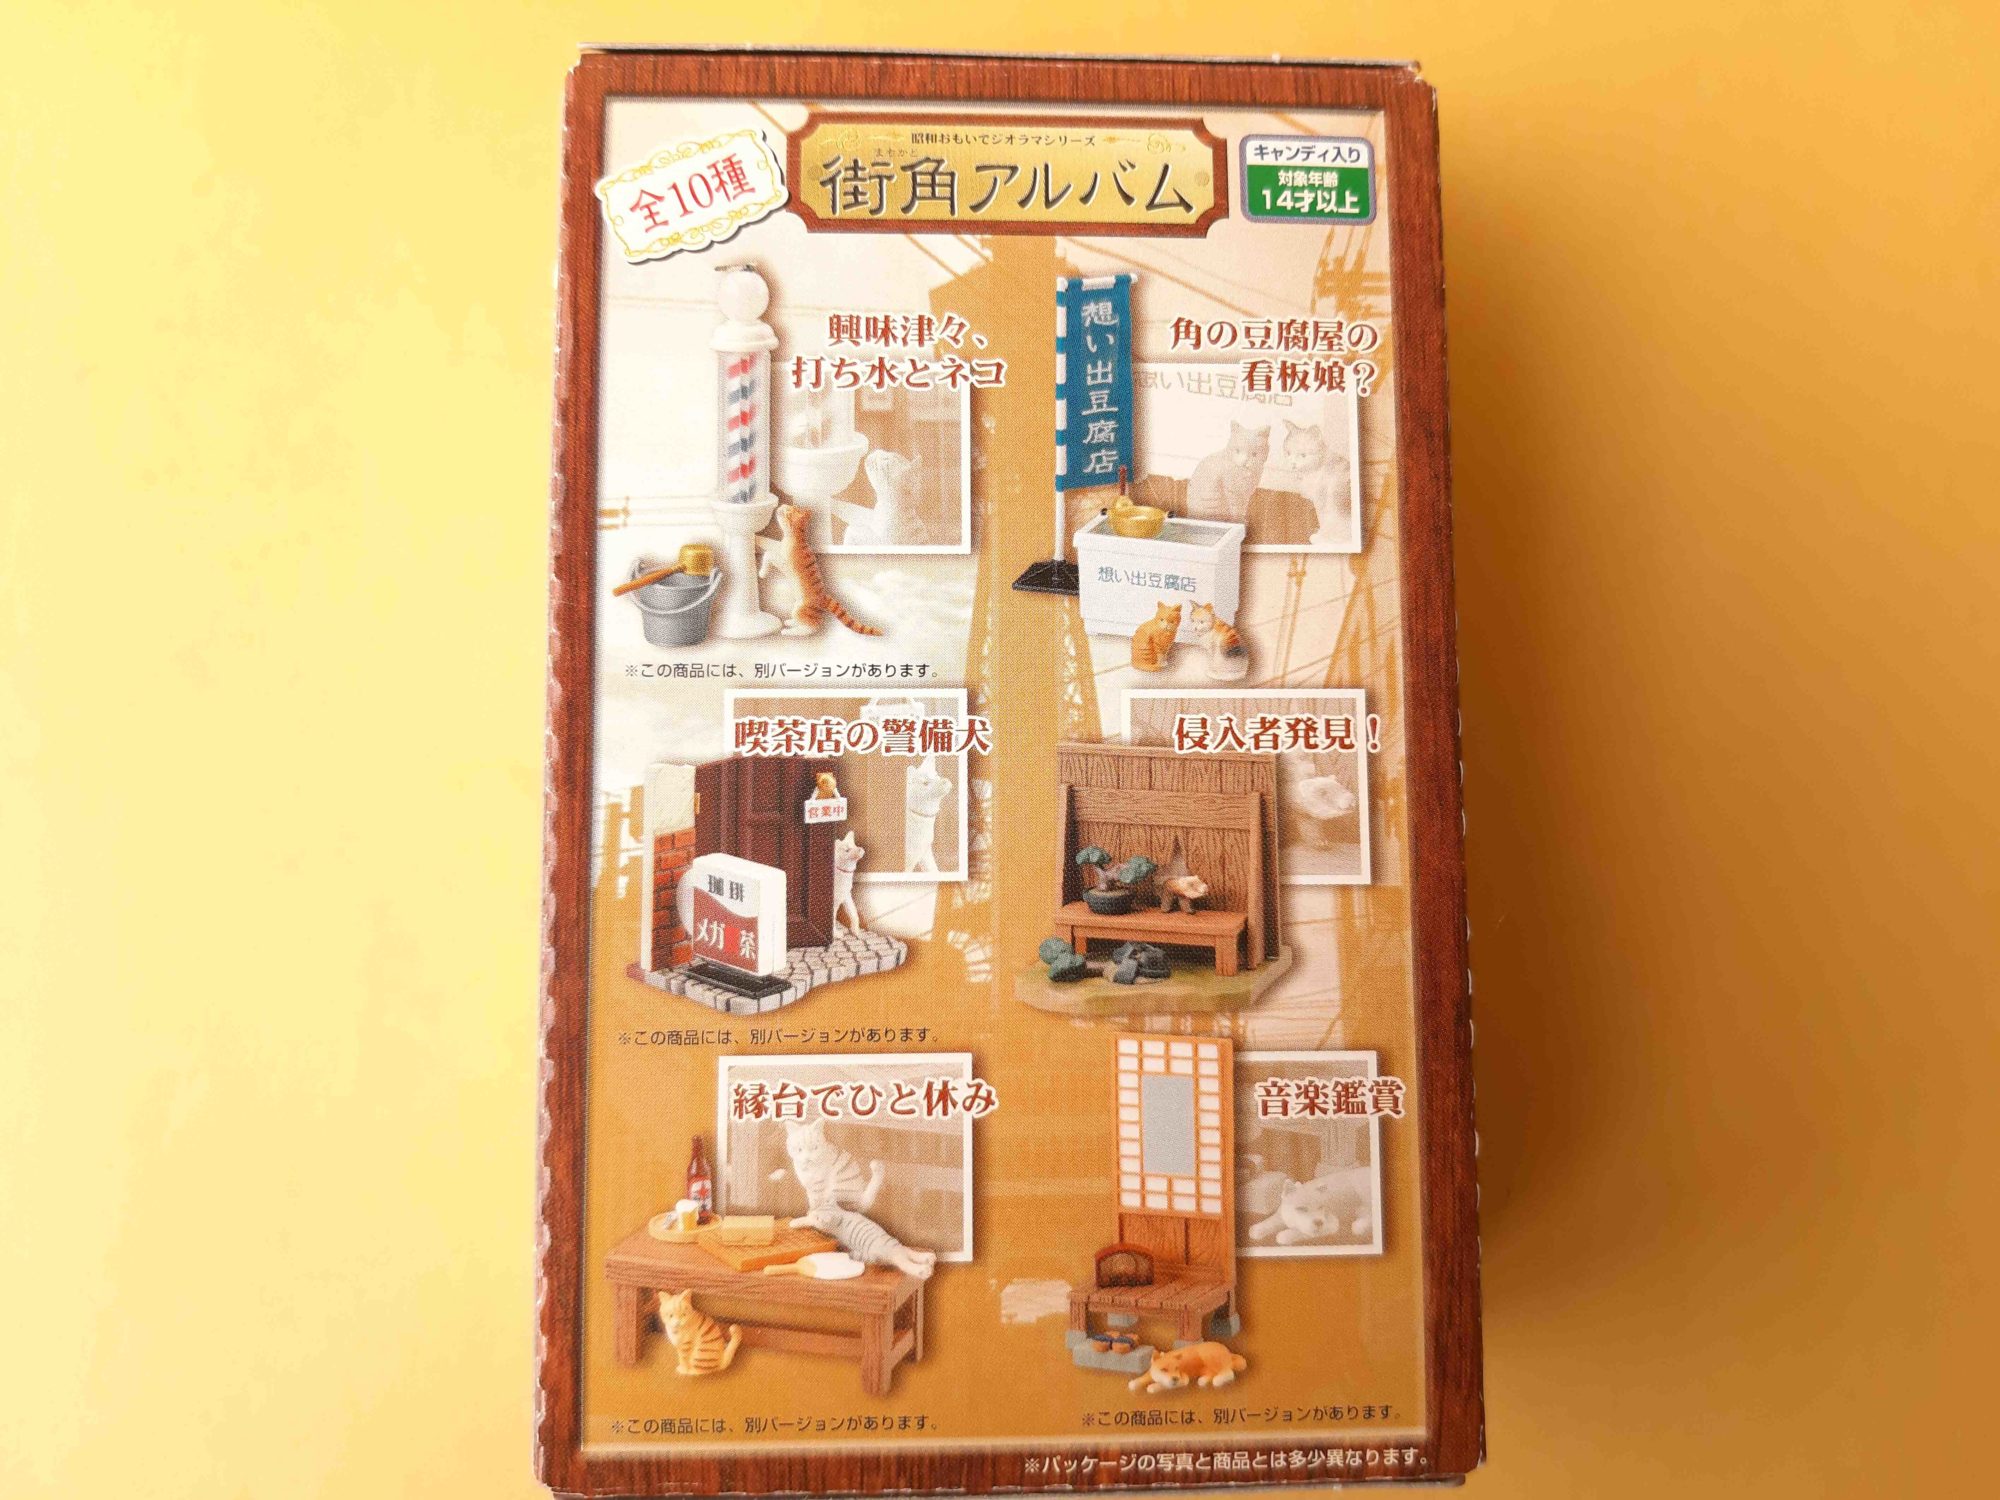 昭和おもいでジオラマシリーズ「街角アルバム」 